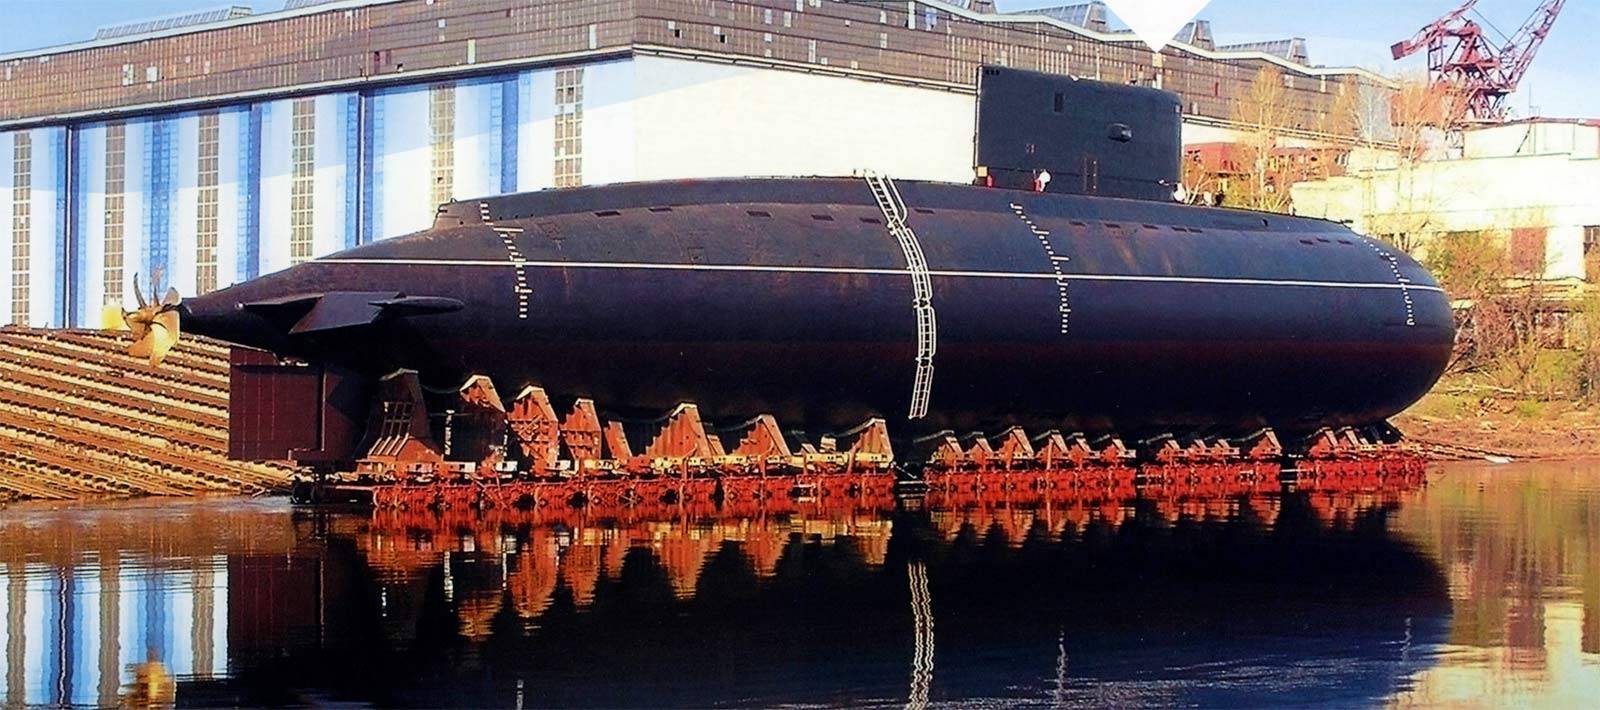 Проект 877экм «палтус» kilo class. советские дизель-электрические подводные лодки послевоенной постройки